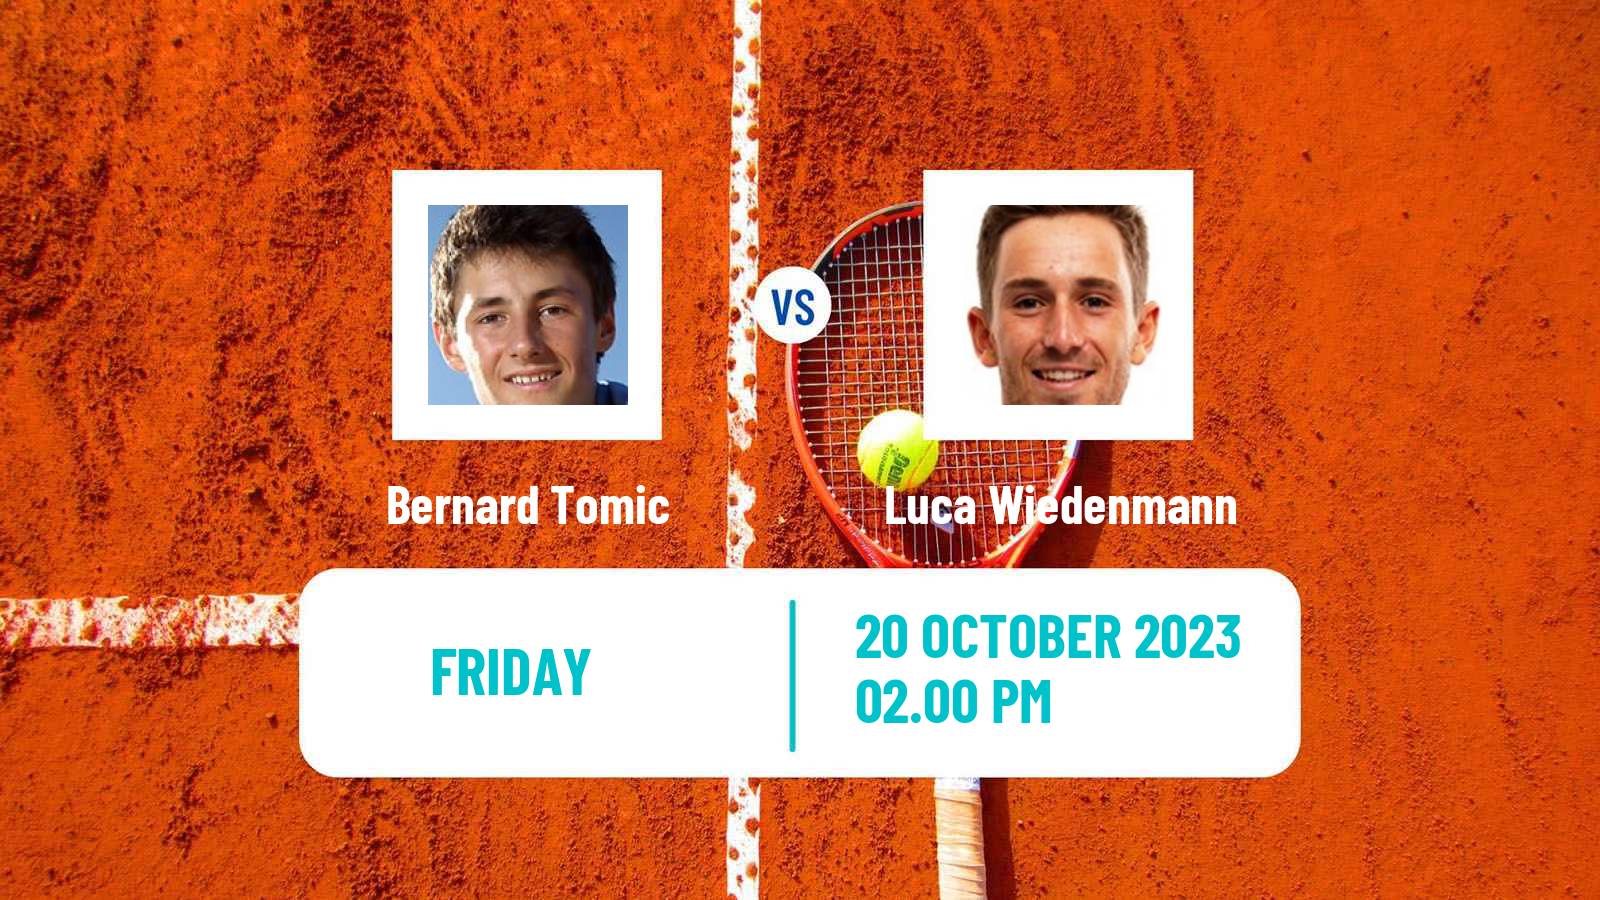 Tennis ITF M15 Las Vegas Nv Men Bernard Tomic - Luca Wiedenmann